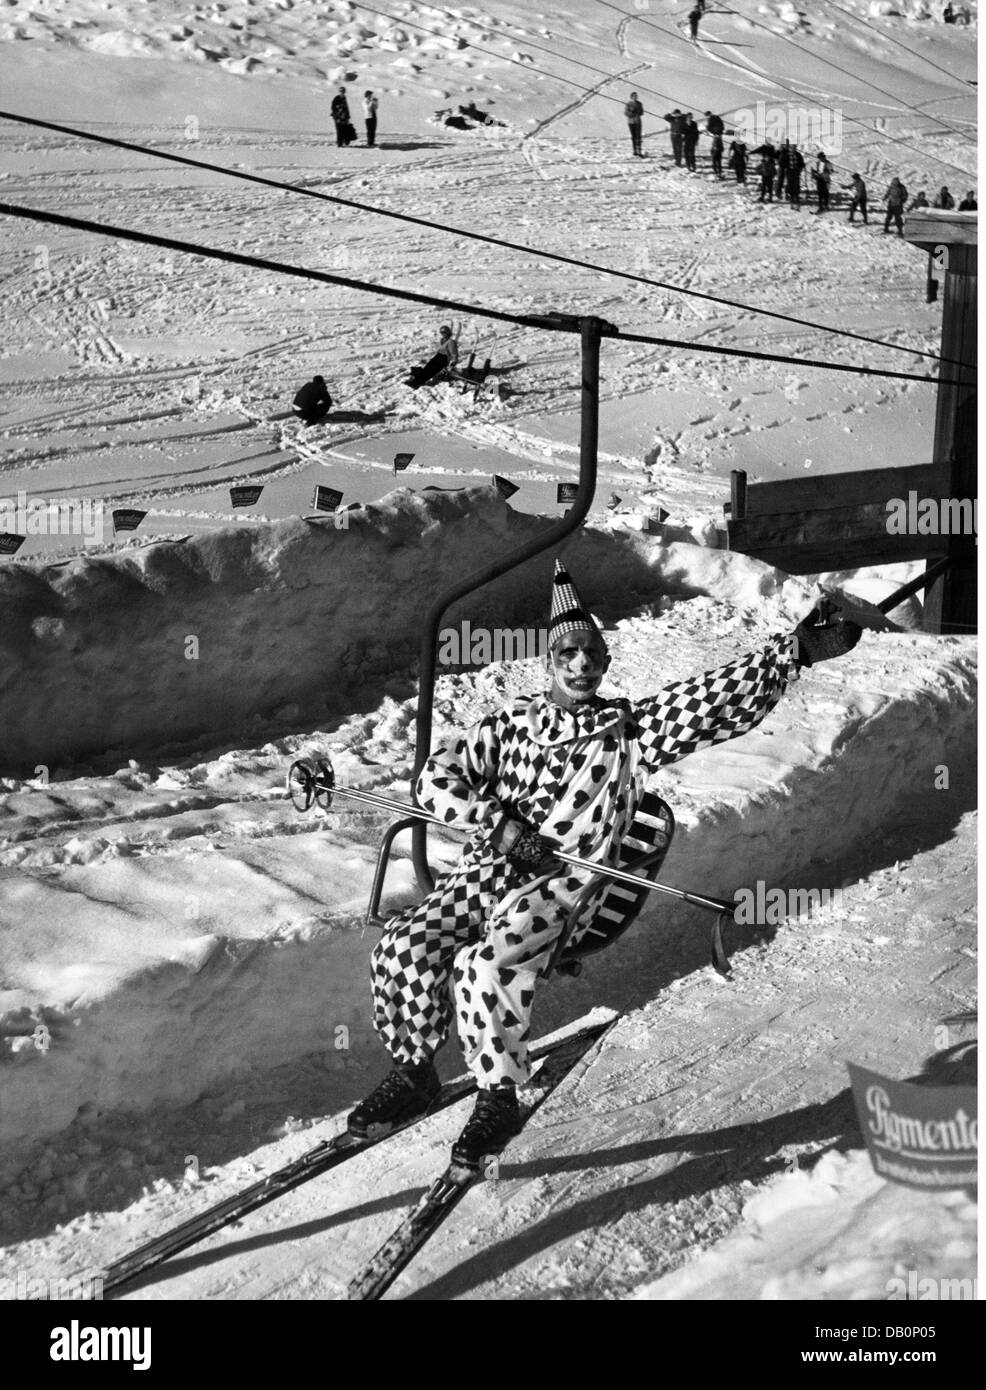 Festivités, carnaval, carnaval sur skis, ski costumé assis sur le télésiège, Firstamm, Schliersee, 1957, droits supplémentaires-Clearences-non disponible Banque D'Images